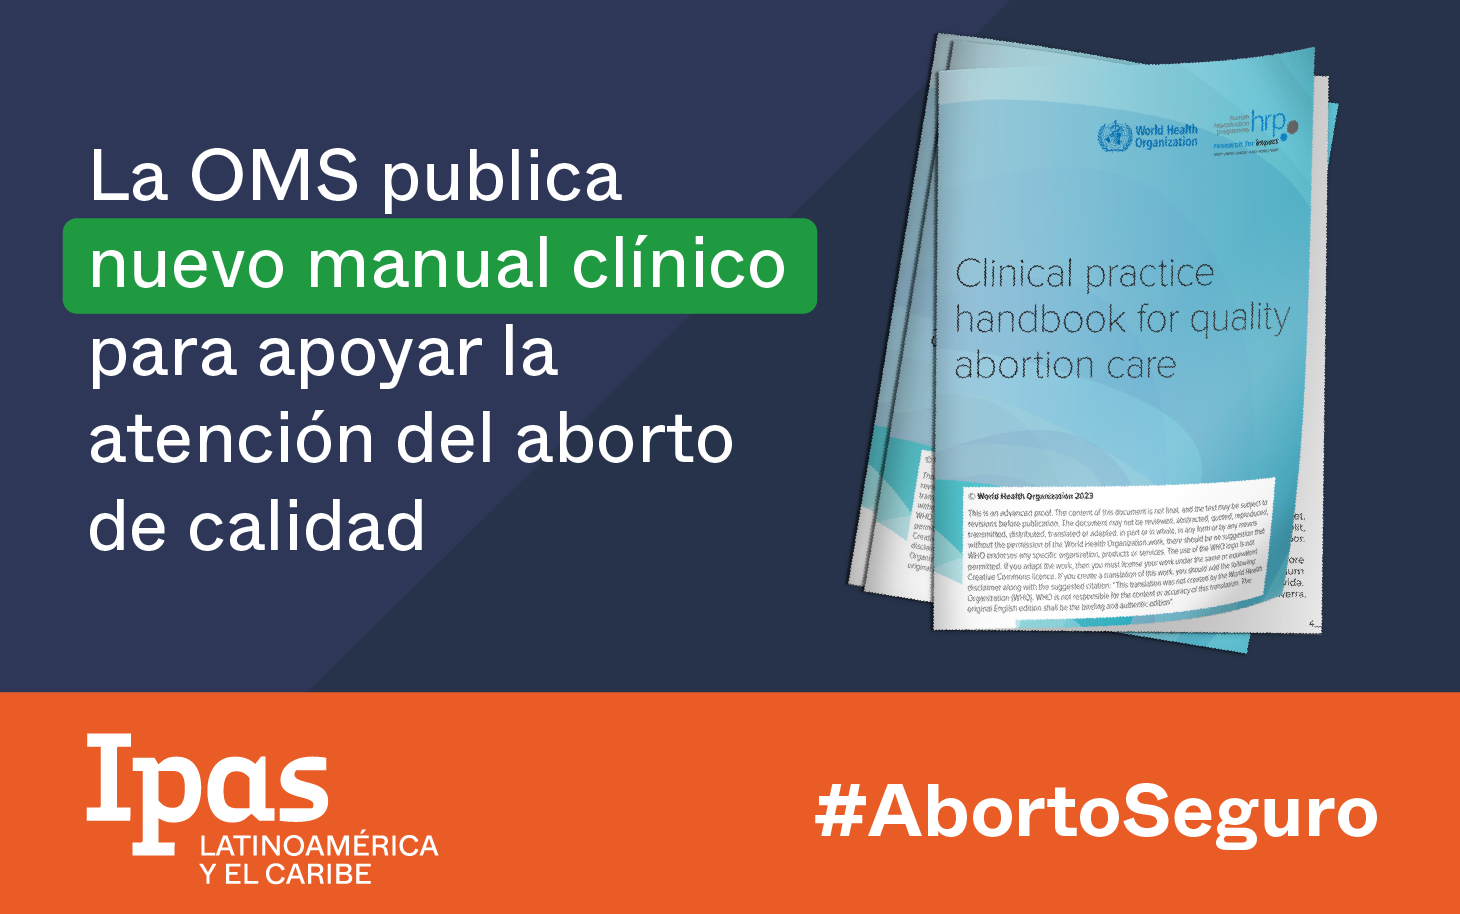 La OMS publica manual clínico para atención del aborto de calidad